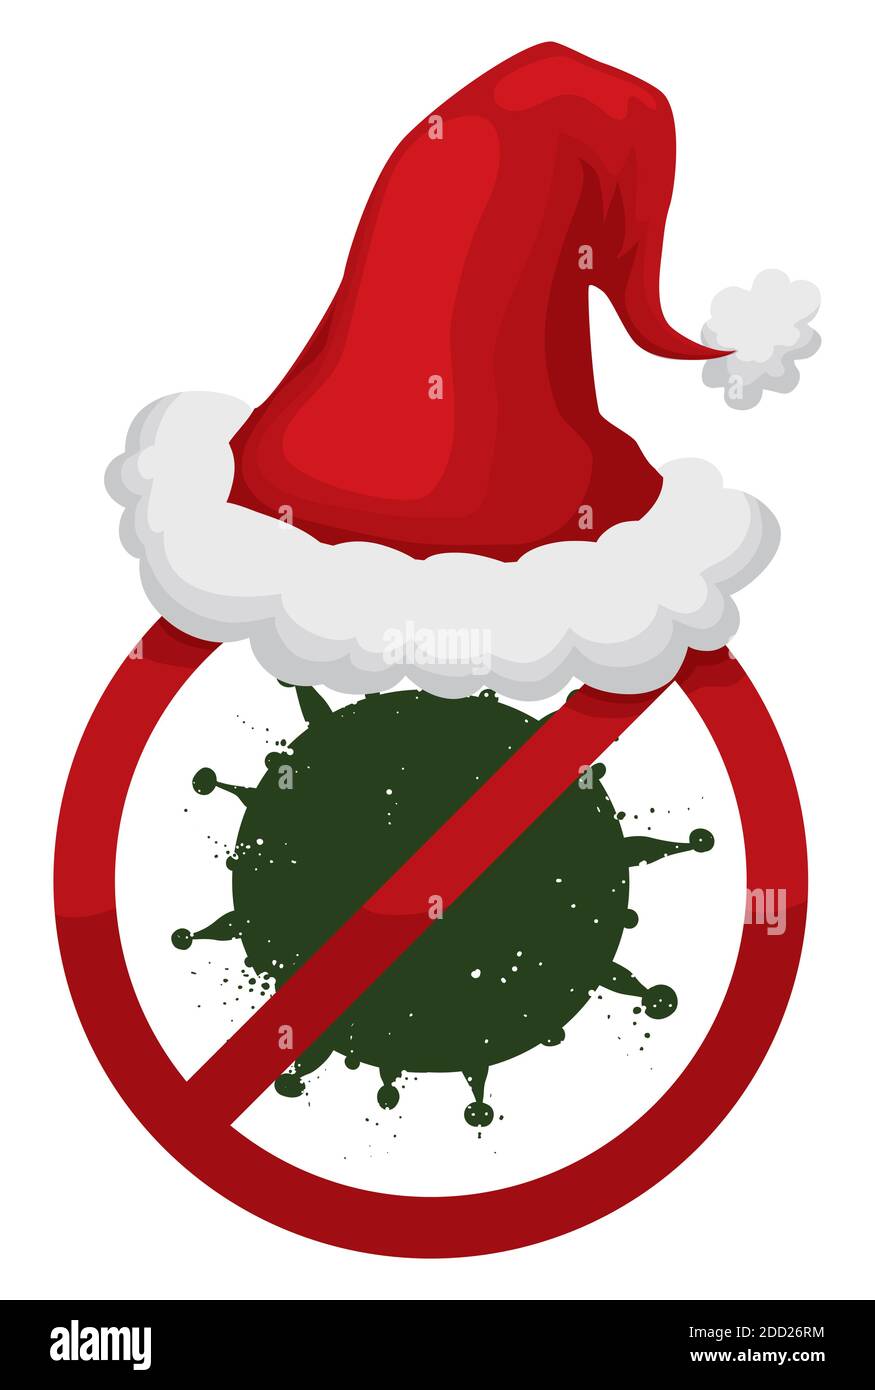 Prohibición de la señal de llevar un sombrero de Santa, que representa las medidas de seguridad debido a la pandemia COVID-19 durante la temporada de Navidad. Ilustración del Vector